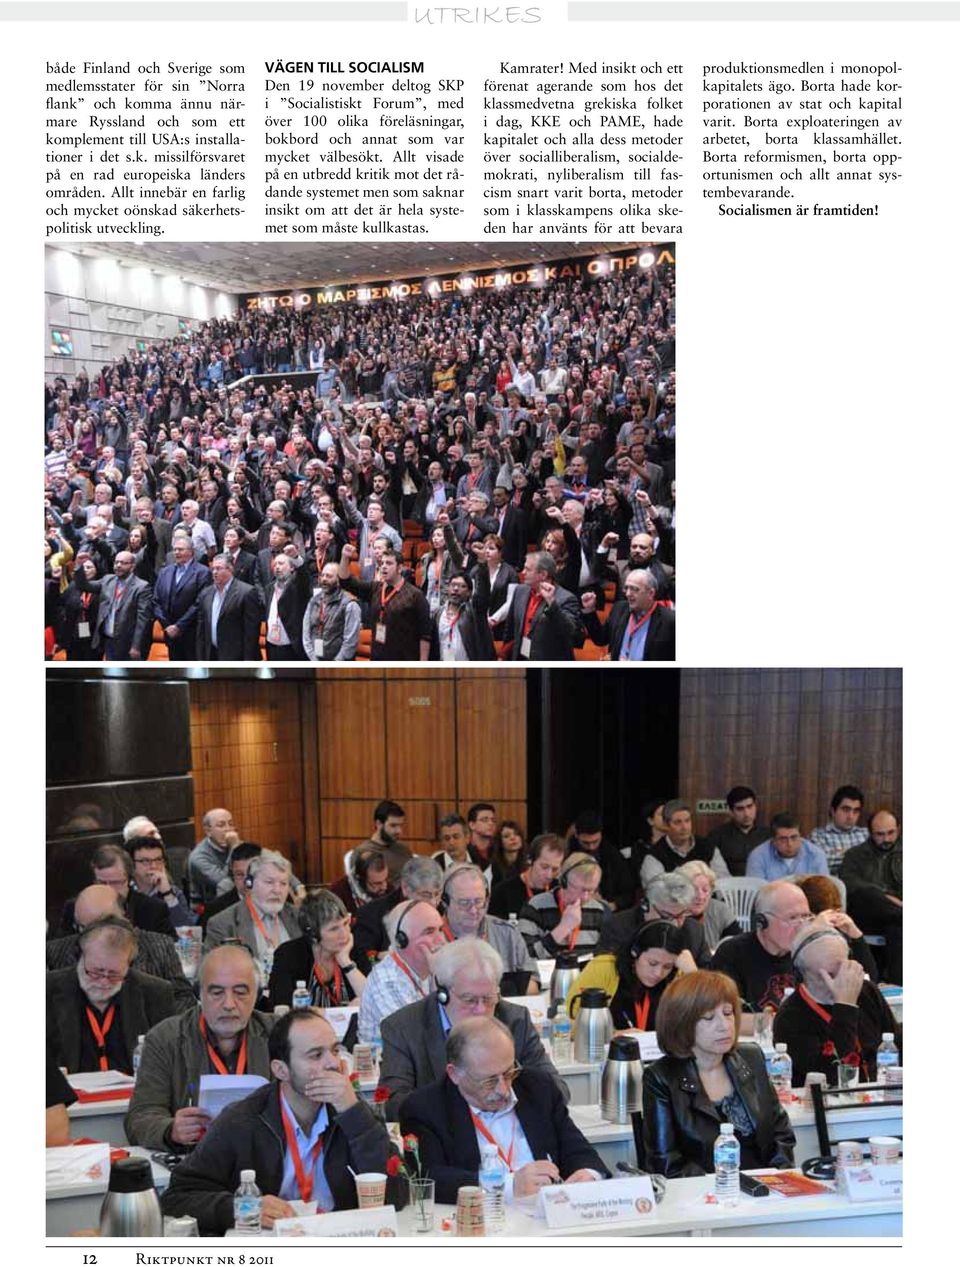 Vägen till socialism Den 19 november deltog SKP i Socialistiskt Forum, med över 100 olika föreläsningar, bokbord och annat som var mycket välbesökt.